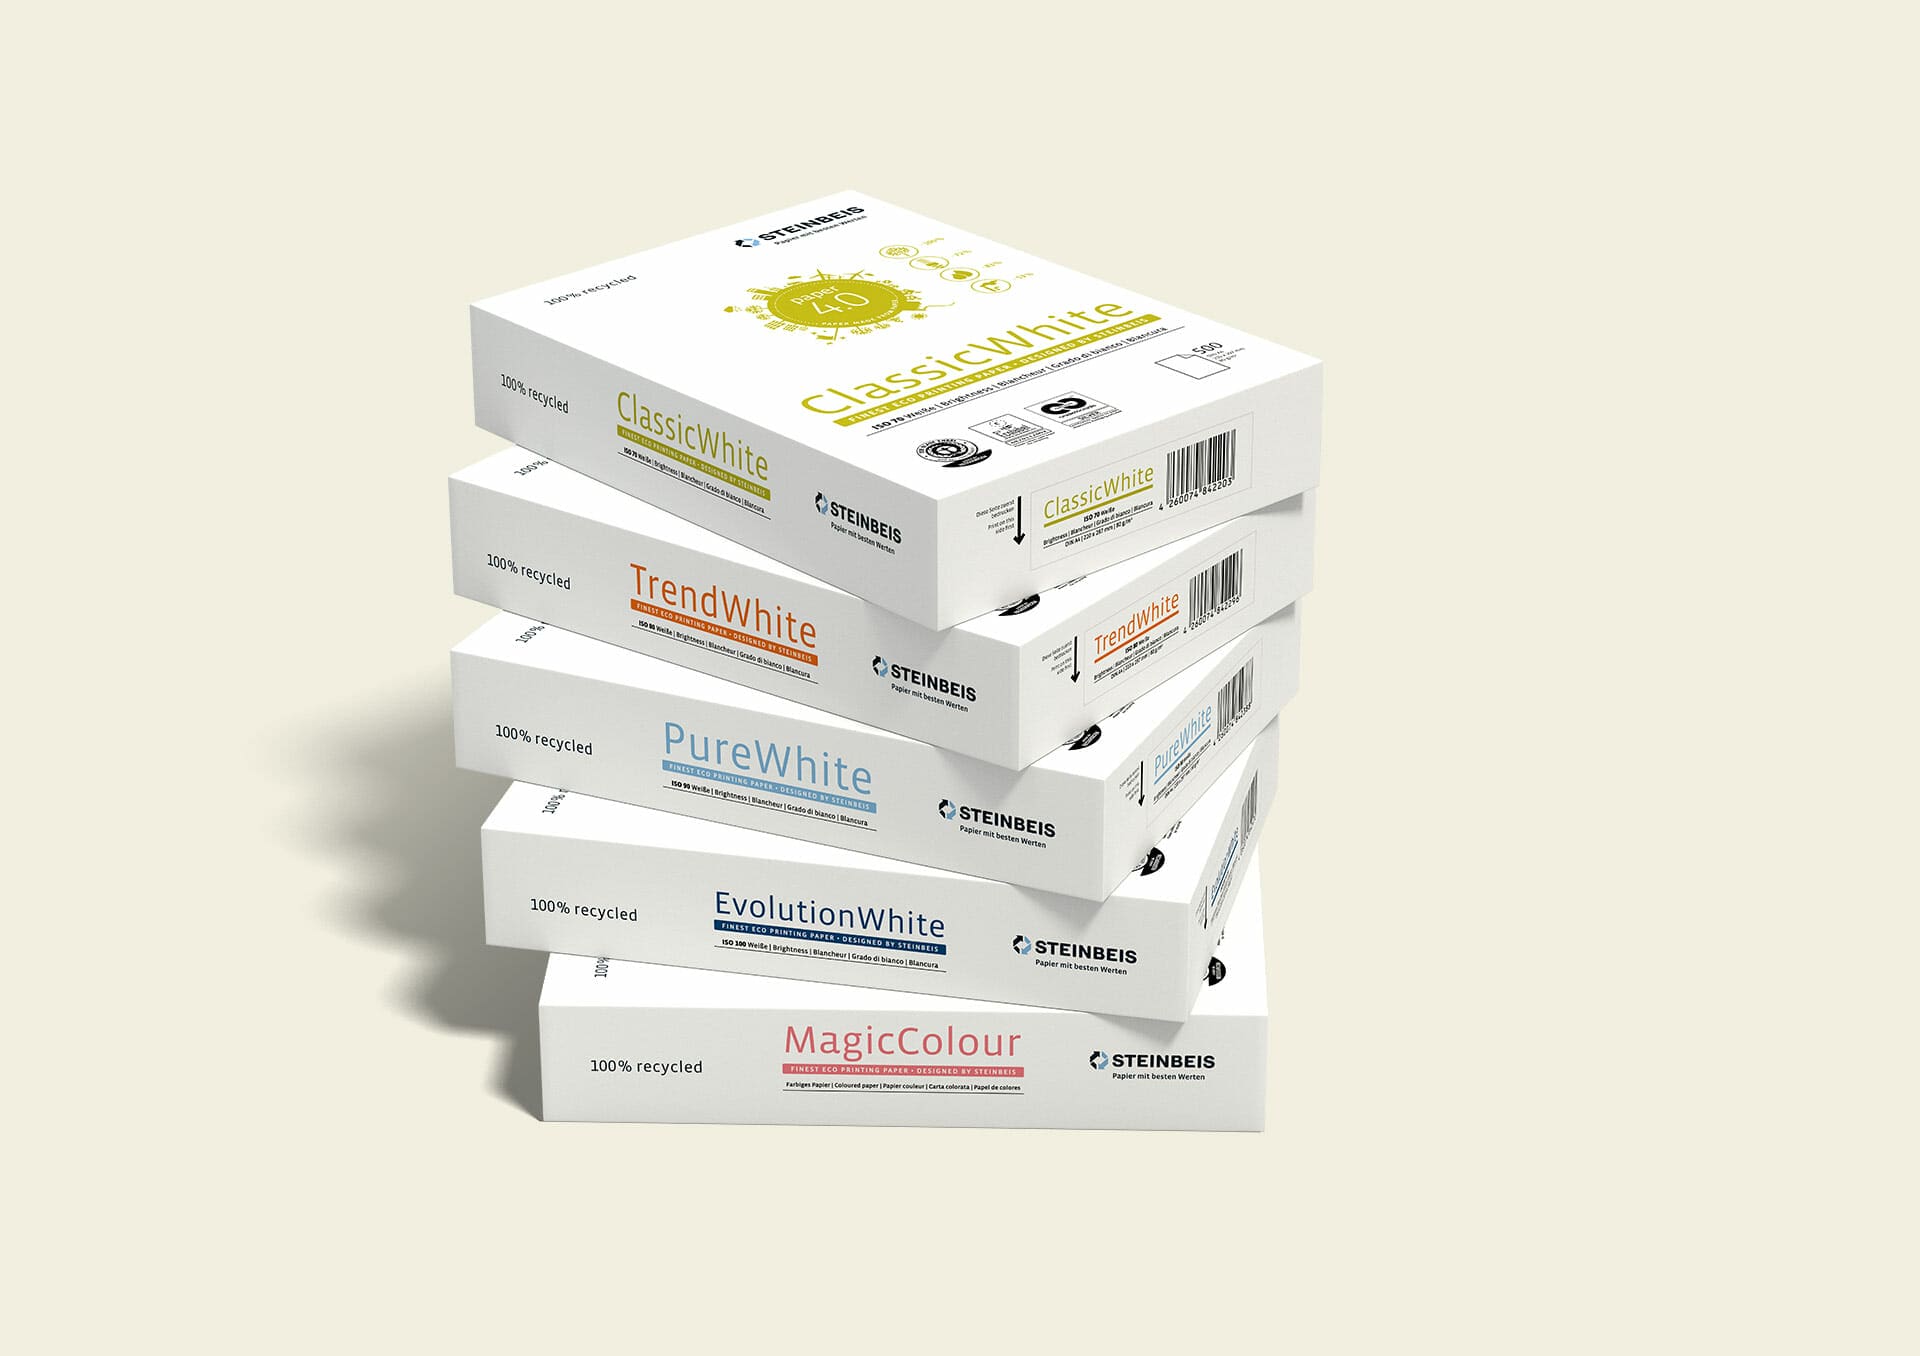 Steinbeis Papier Packaging Redesign 2015 Stapel